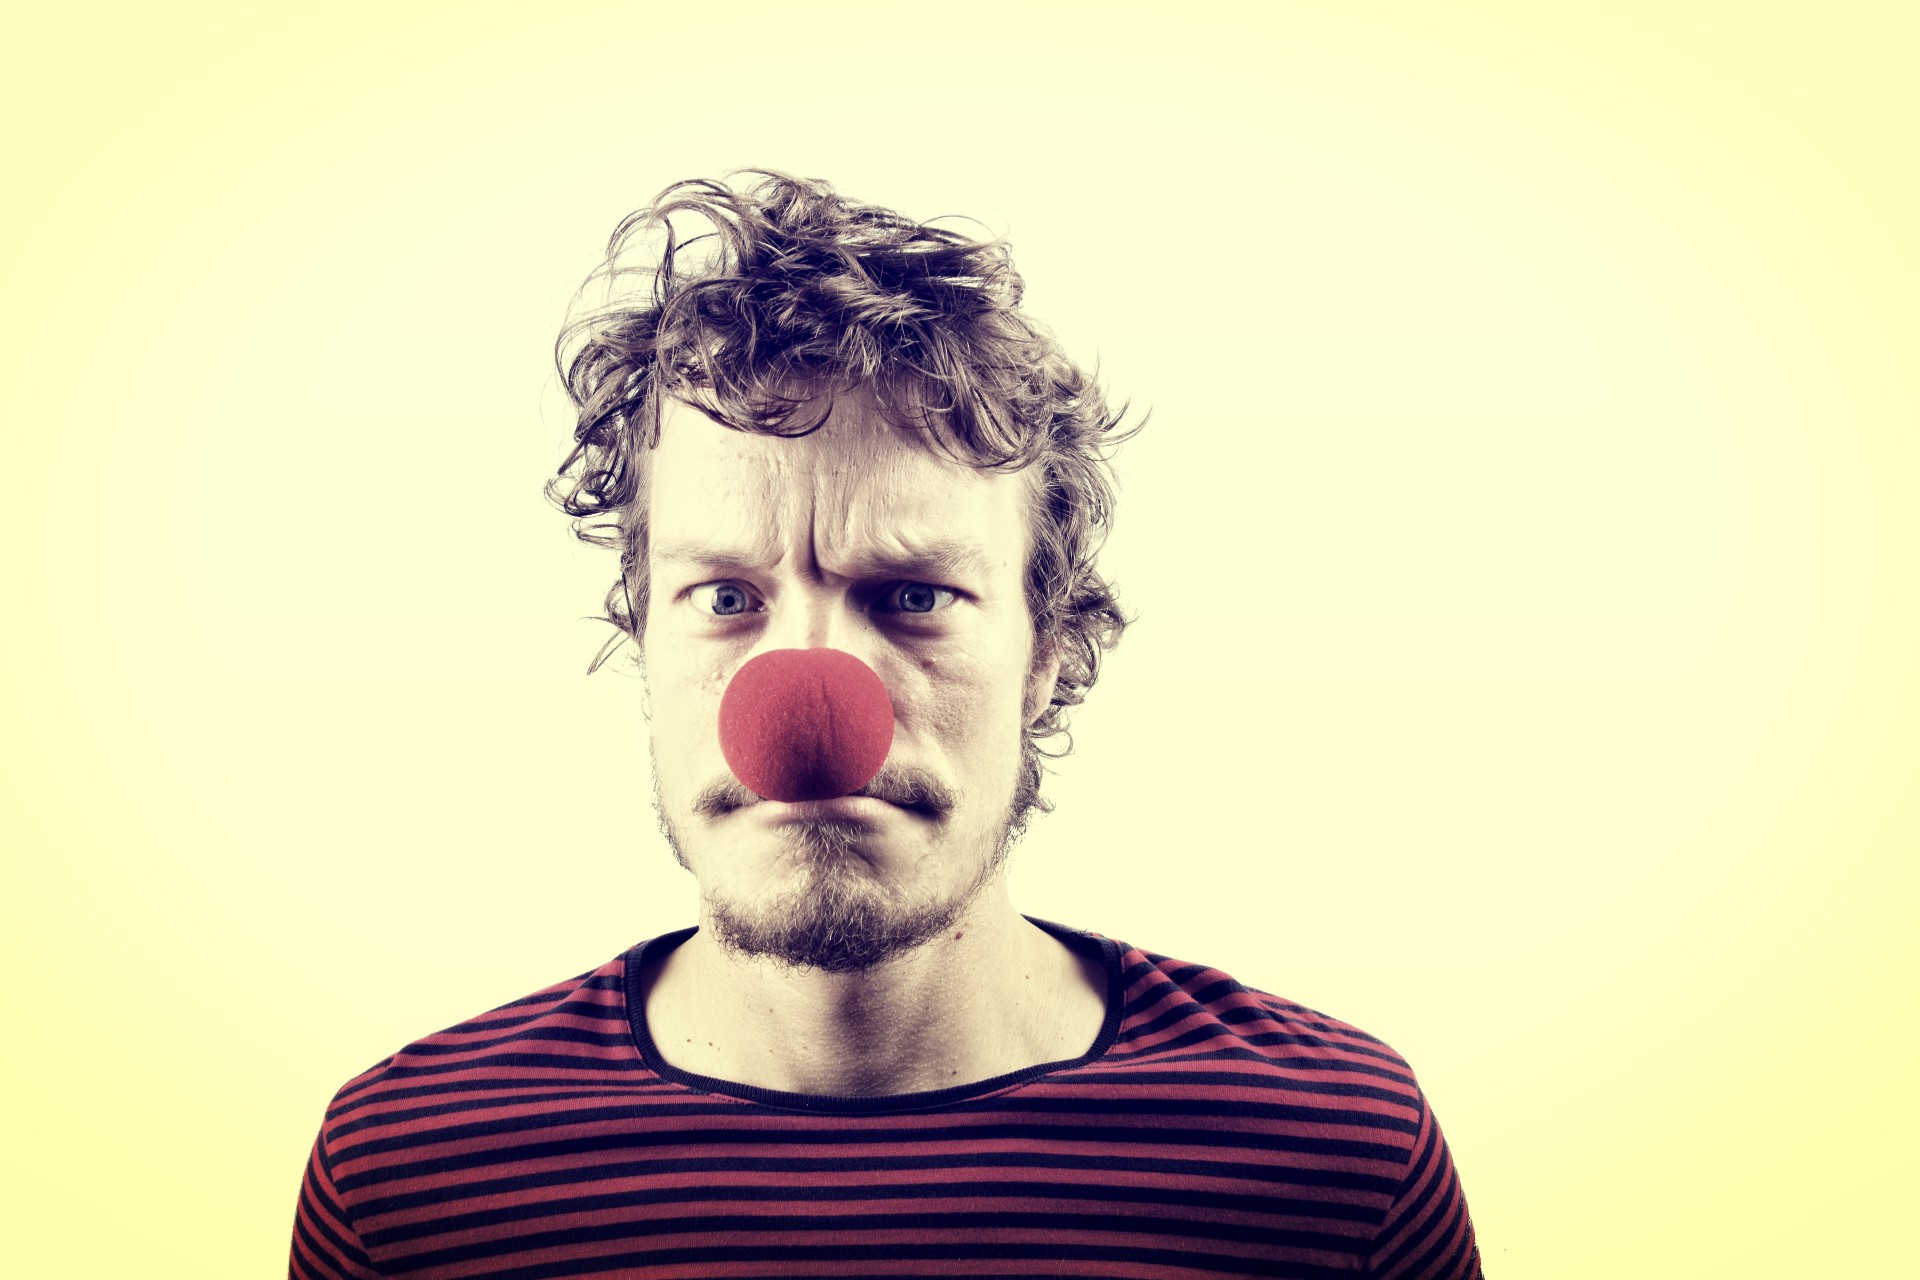 Красный нос у мужчины. Нос клоуна. Красный нос. Красный клоунский нос. Мужчина с носом клоуна.